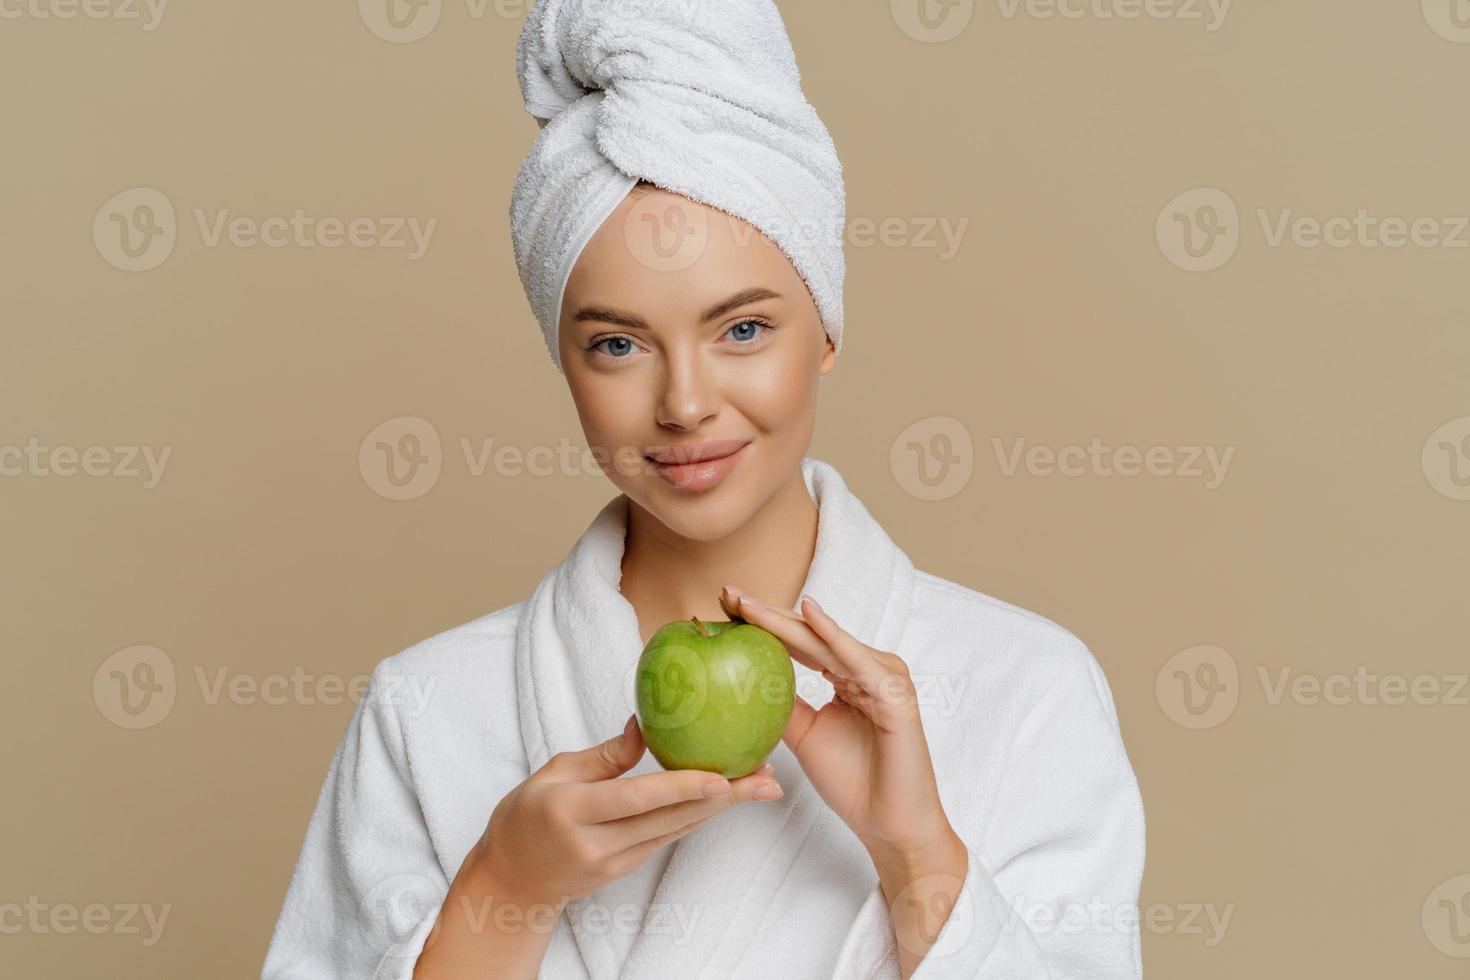 härlig ung kvinna har fräsch upp huden efter att ha tagit bad klädd i morgonrock insvept handduk på huvudet håller grönt äpple som innehåller mycket vitaminer isolerade över brun bakgrund. hygien koncept foto